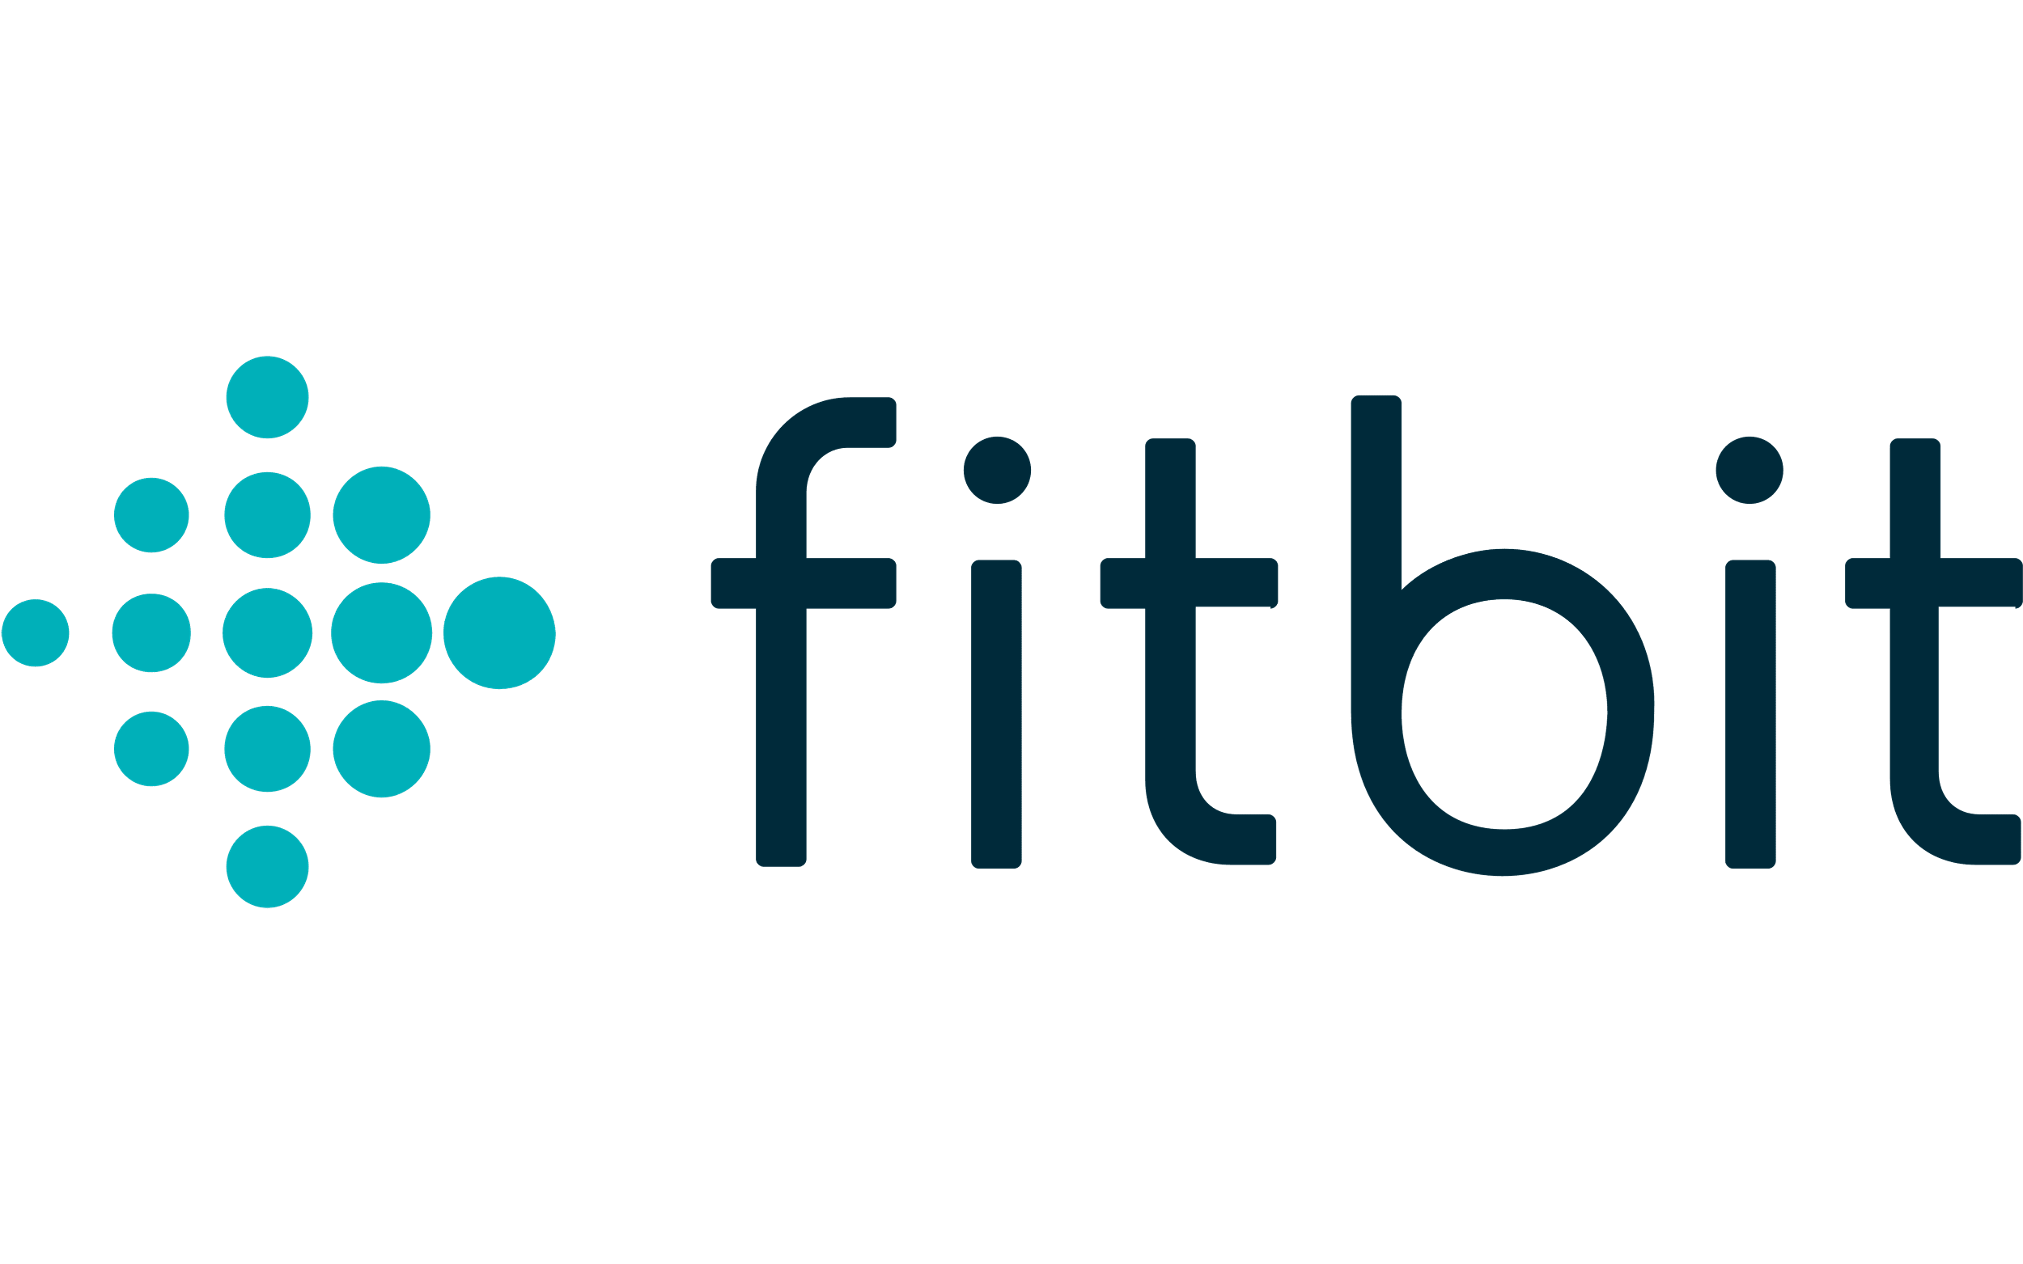 Logo fitbit